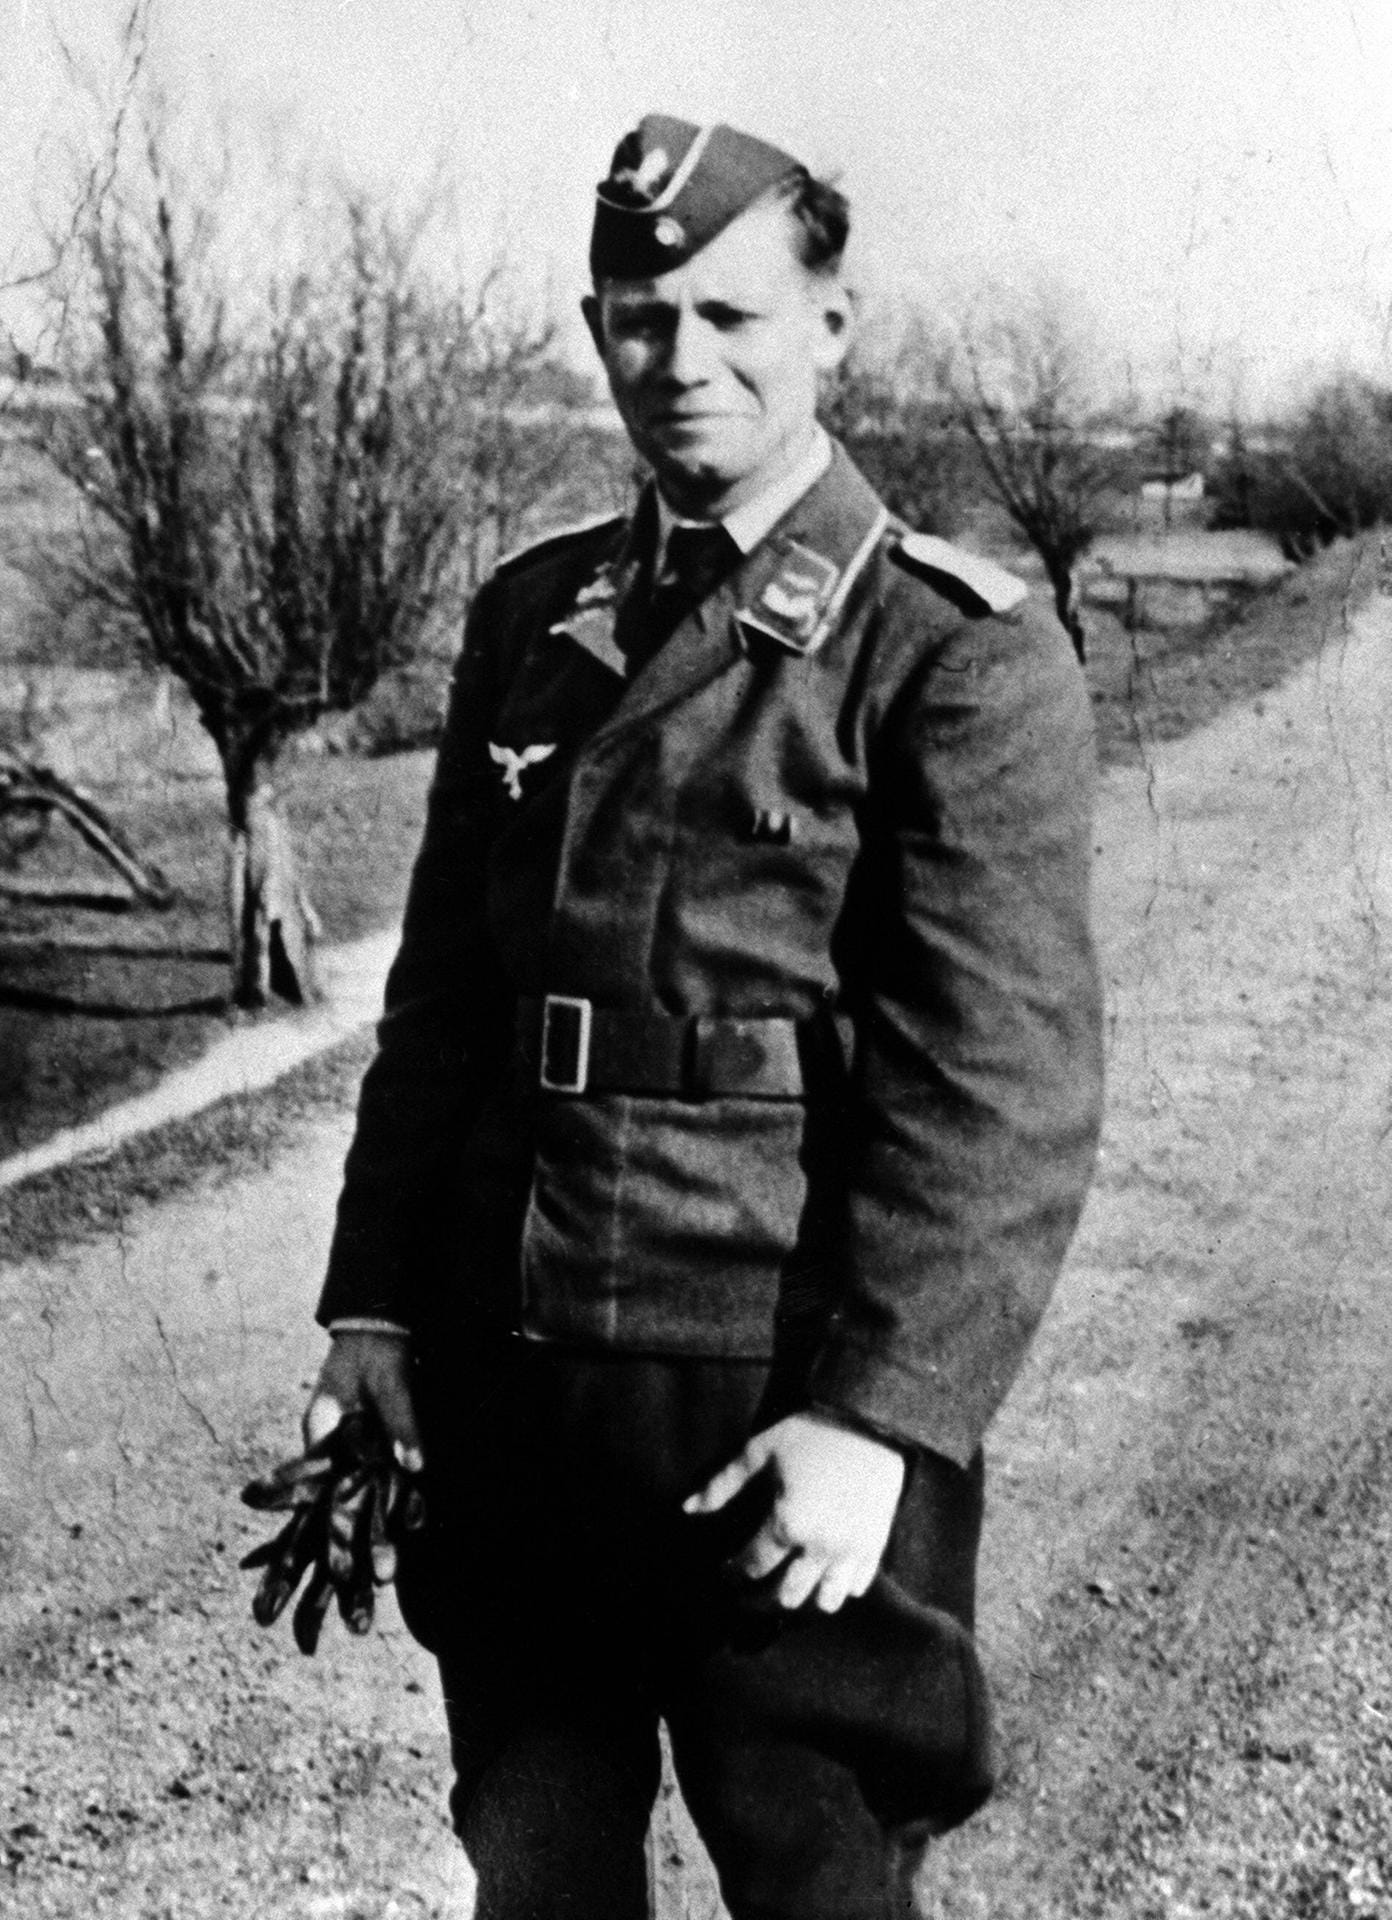 Als 17-jähriger wird Schmidt noch wegen "zu flotter Sprüche" aus der Marine-Hitlerjugend ausgeschlossen. Am 4. November 1937 wurde er zum Wehrdienst bei der Flakartillerie in Bremen-Vegesack eingezogen. Ab 1939 war der Feldwebel der Reserve zur Luftverteidigung Bremens eingesetzt.